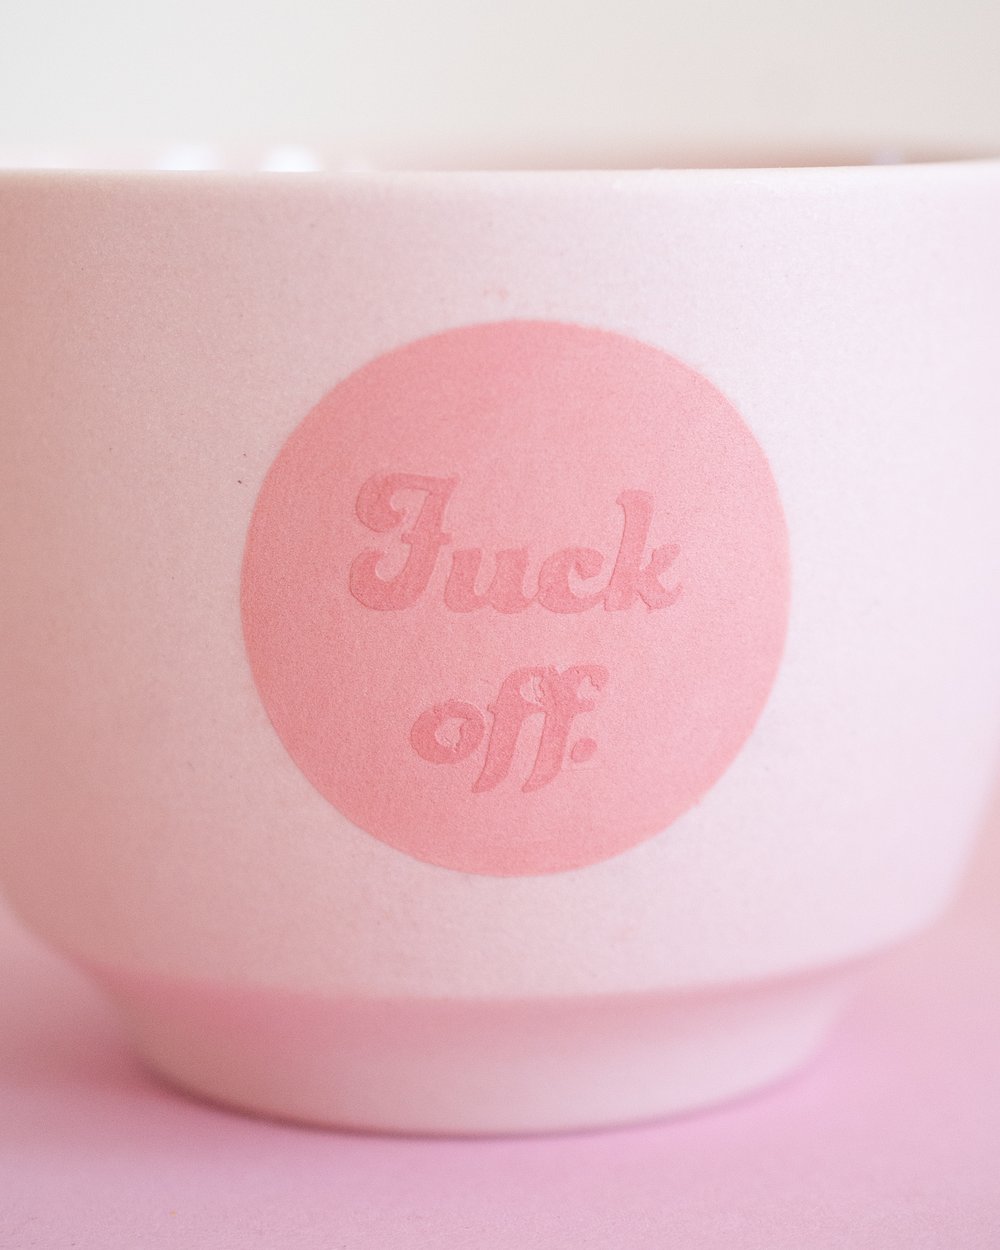 Image of The Fuck Off mug